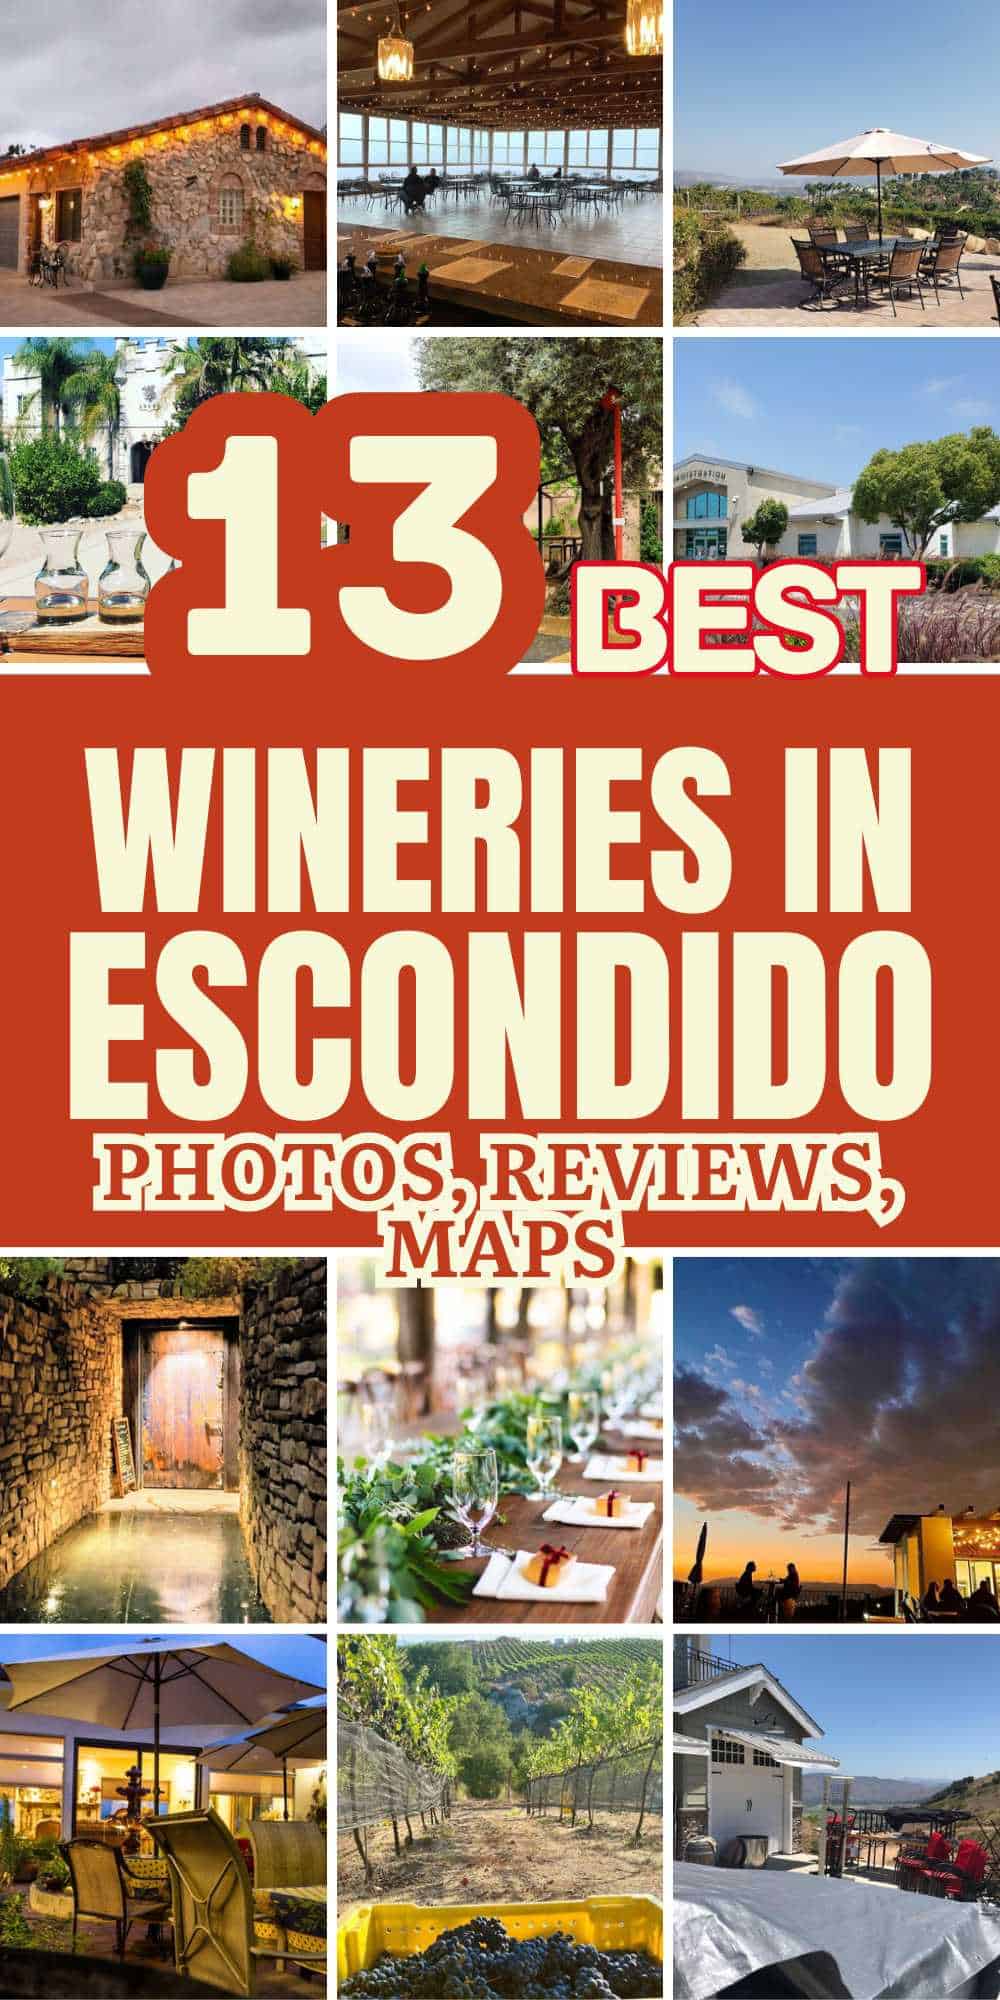 Best Wineries in Escondido